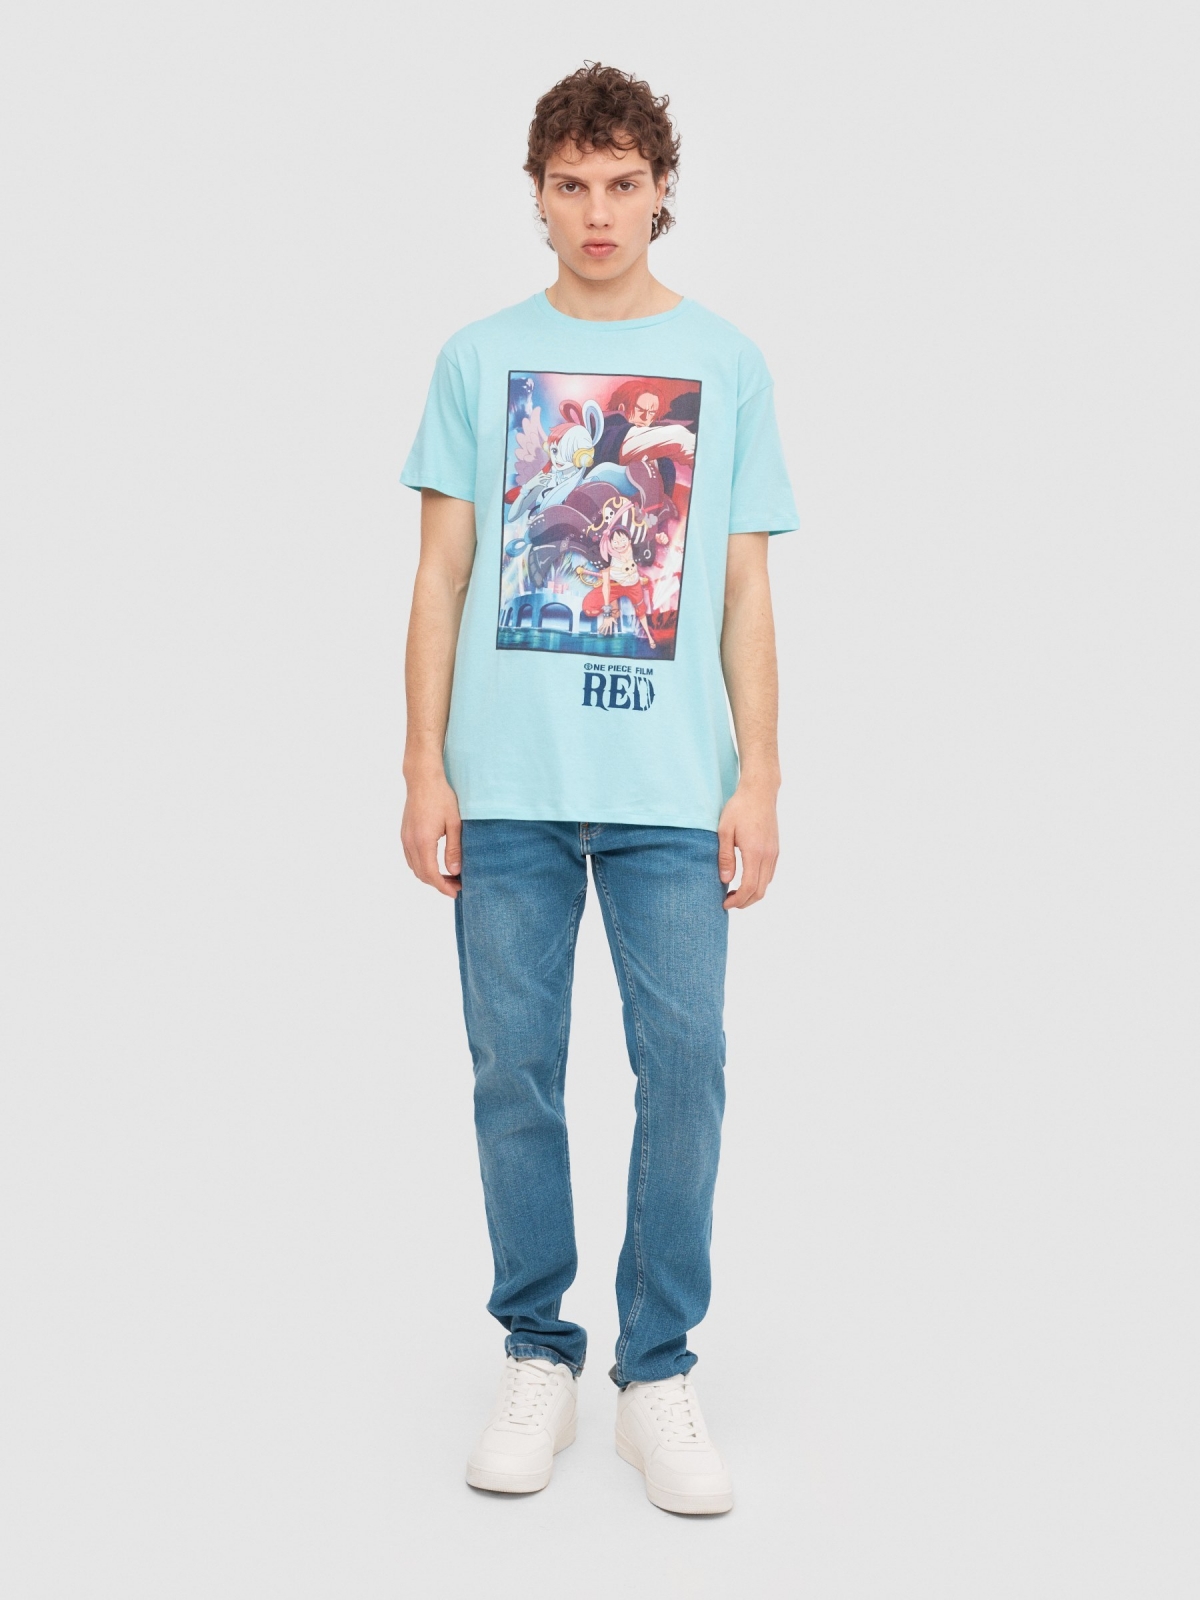 T-Shirt Filme One Piece azul claro vista geral frontal